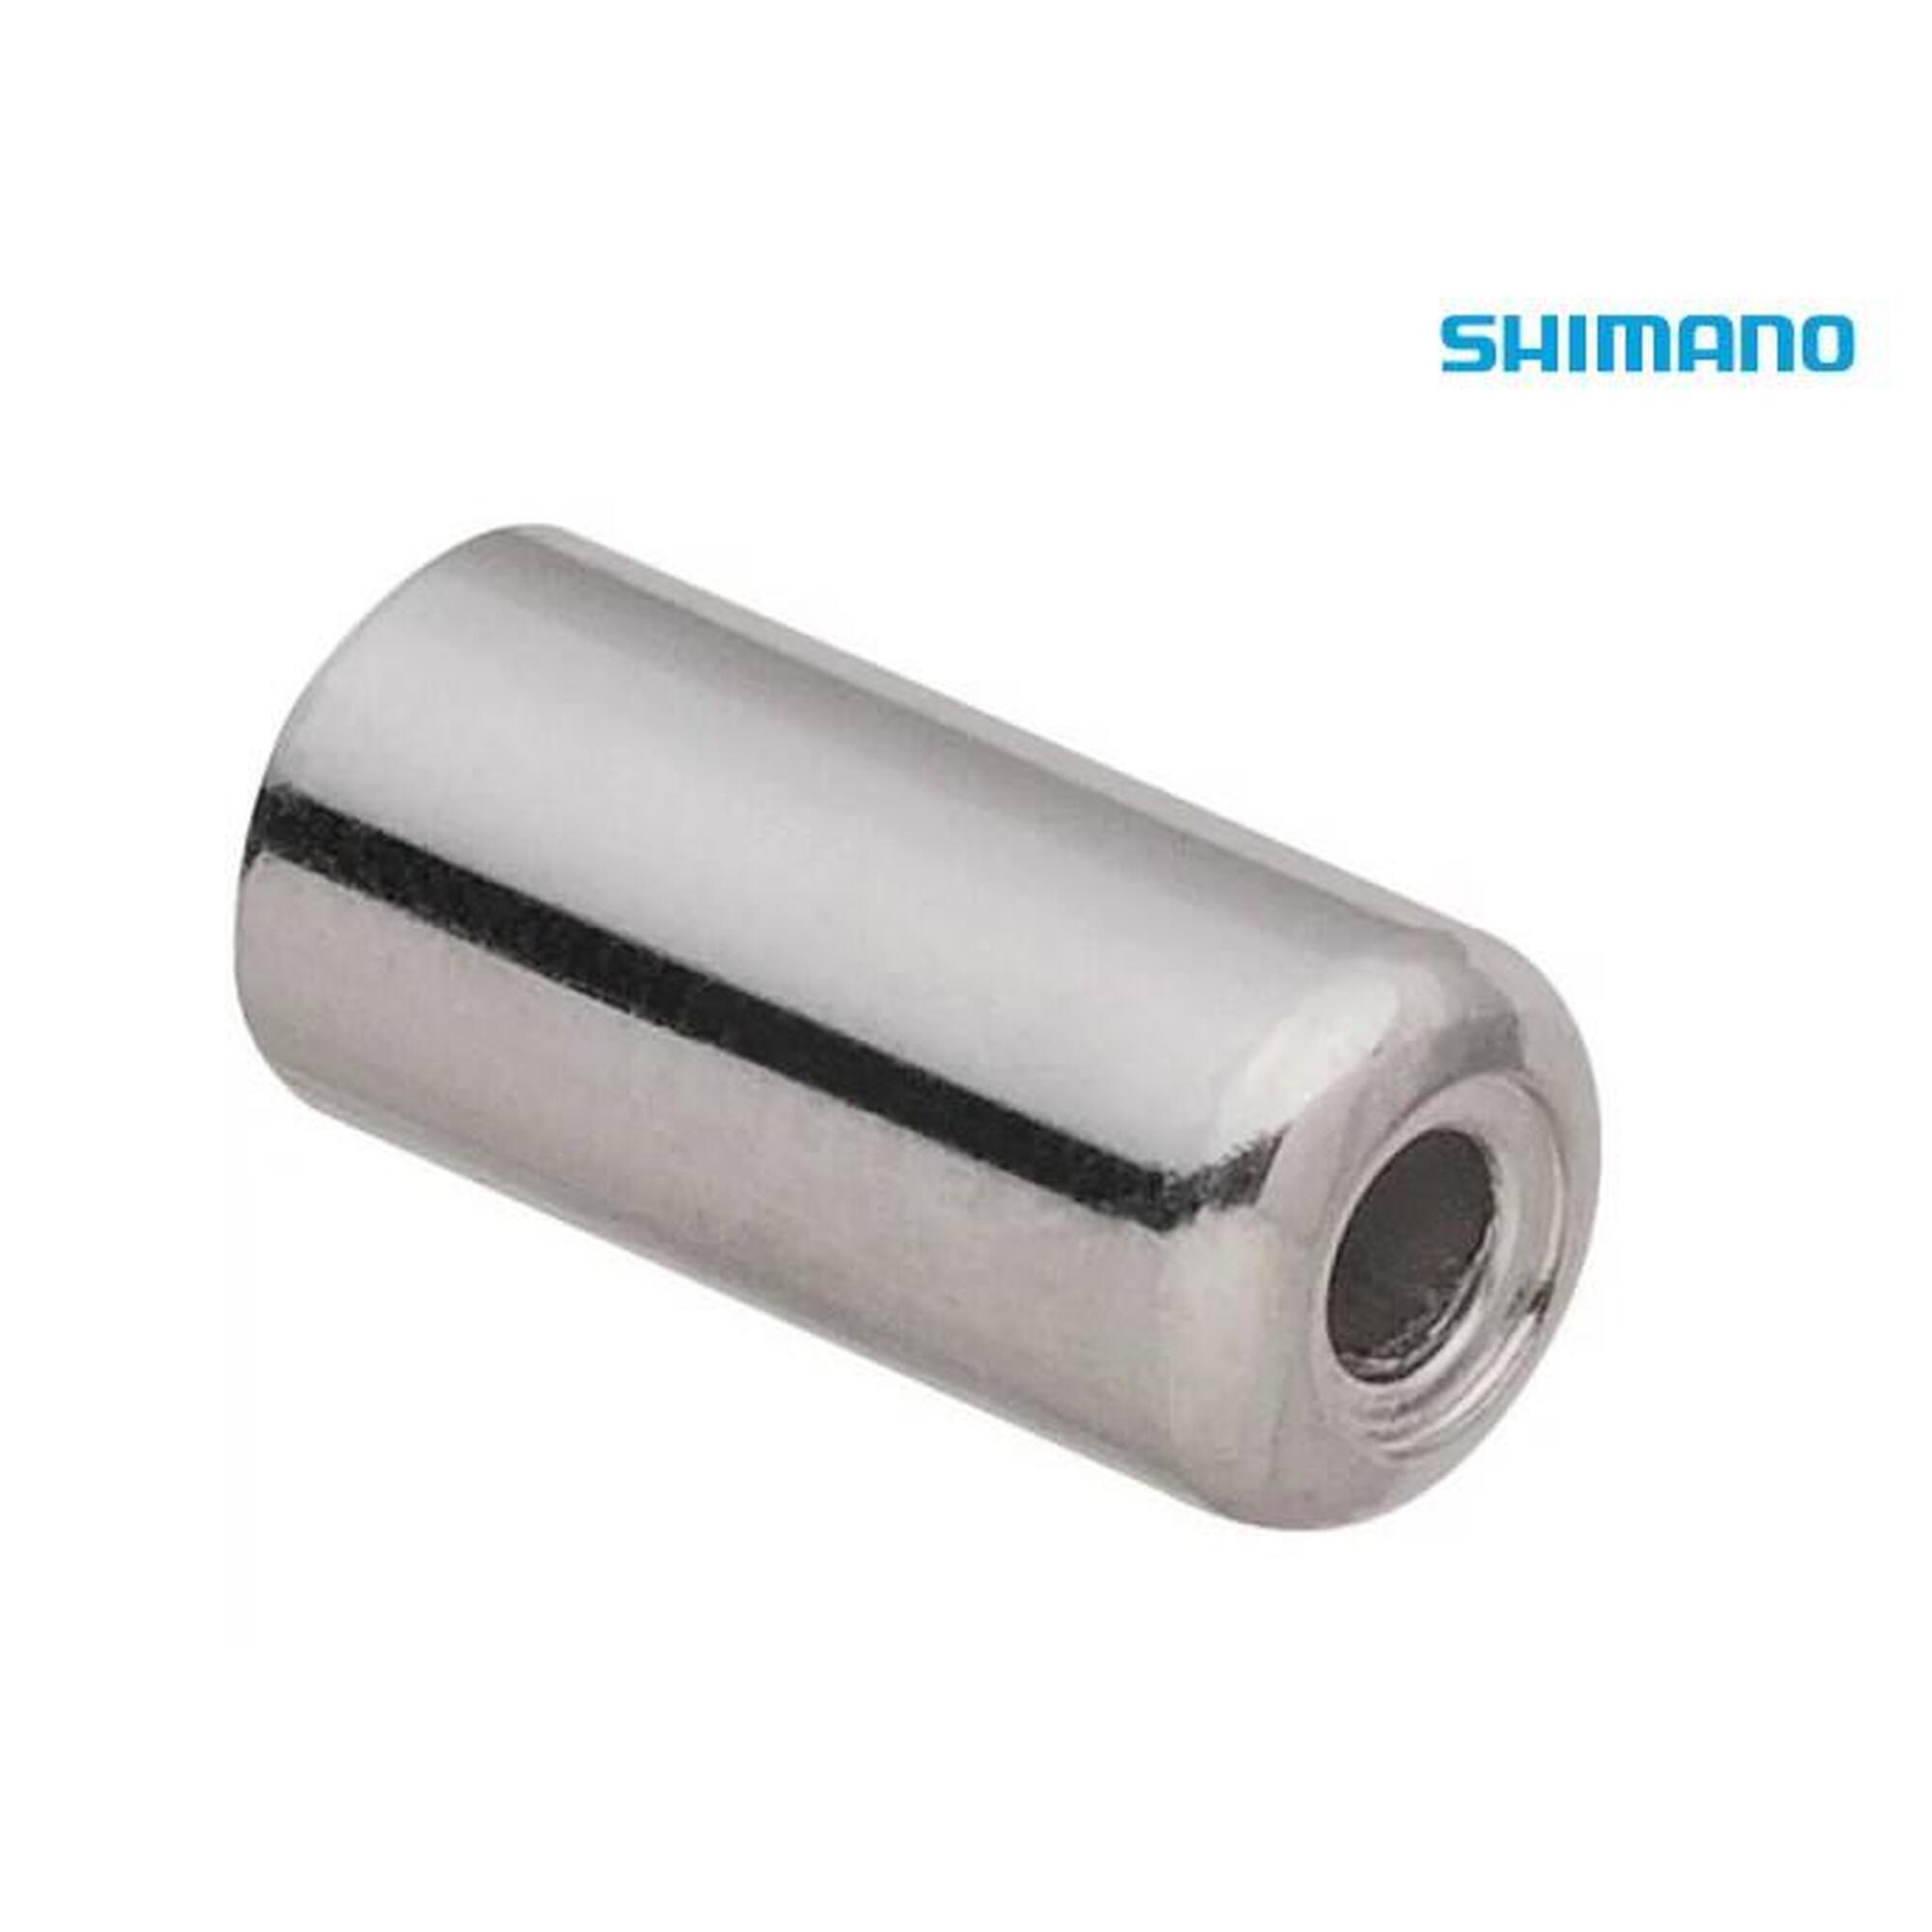 Shimano Mantelspitze außen: 6 mm innen: 5 mm Stahl OEM-Verpackung